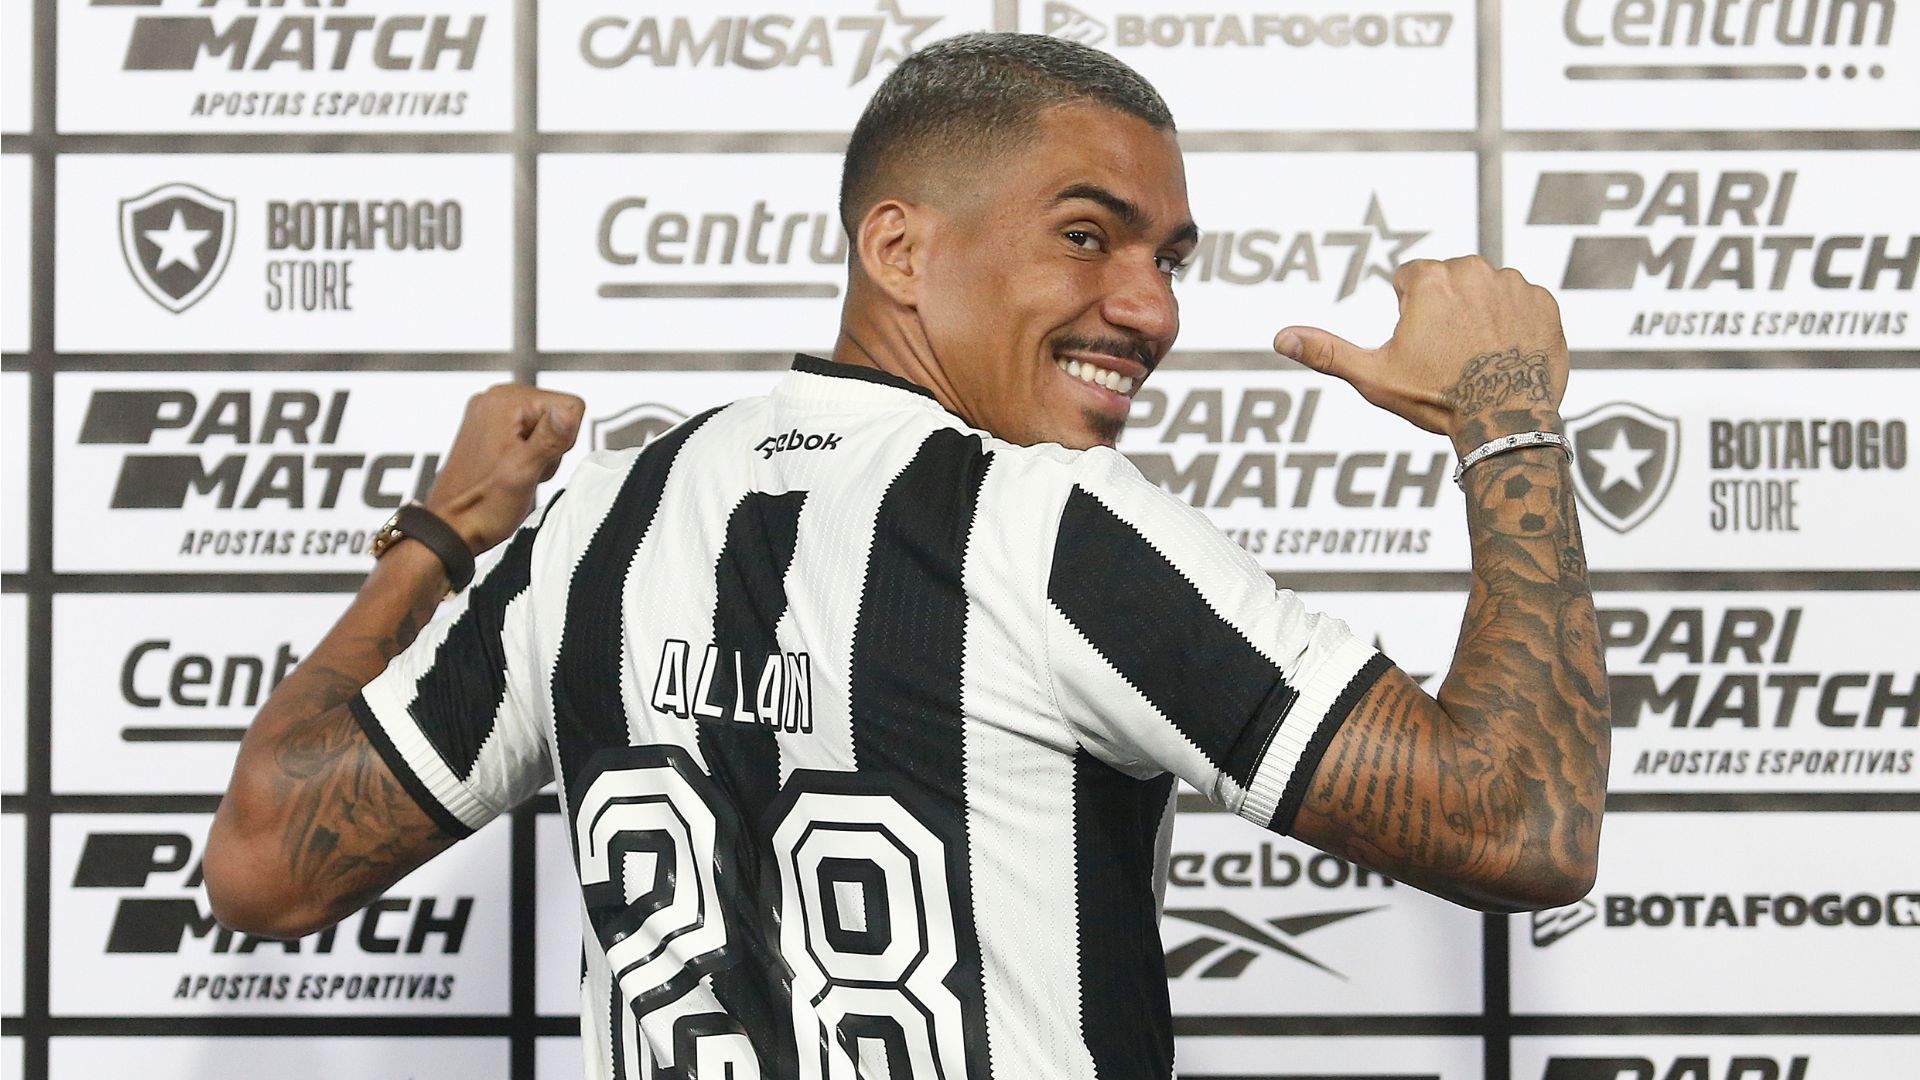 Allan é o novo camisa 28 do Botafogo (Crédito: Vitor Silva / Botafogo)